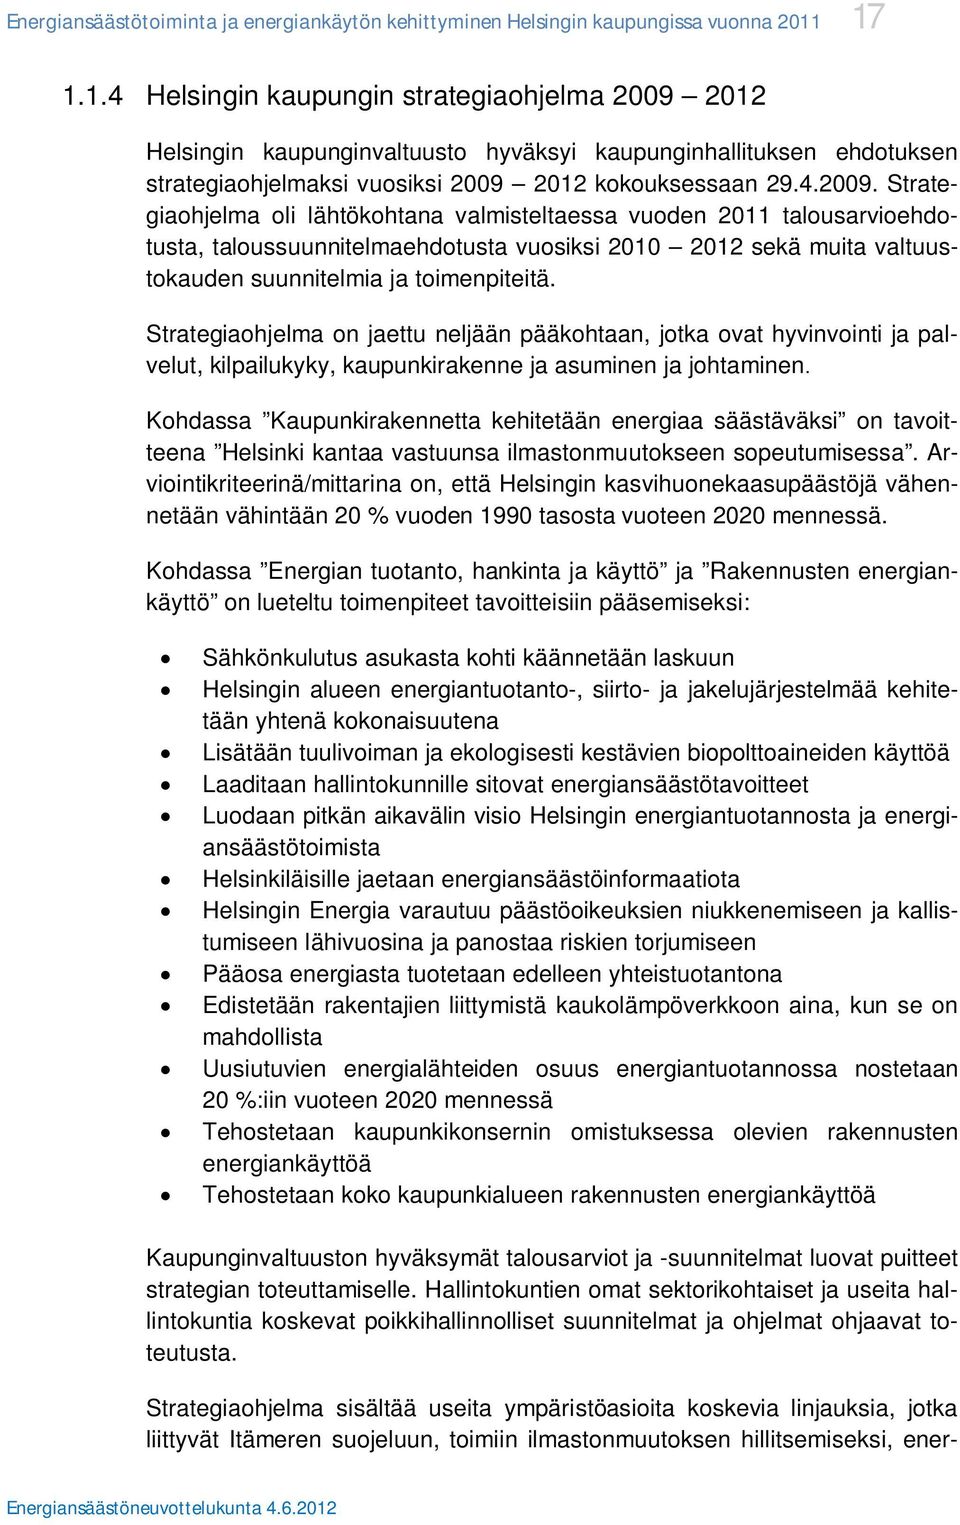 2012 Helsingin kaupunginvaltuusto hyväksyi kaupunginhallituksen ehdotuksen strategiaohjelmaksi vuosiksi 2009 